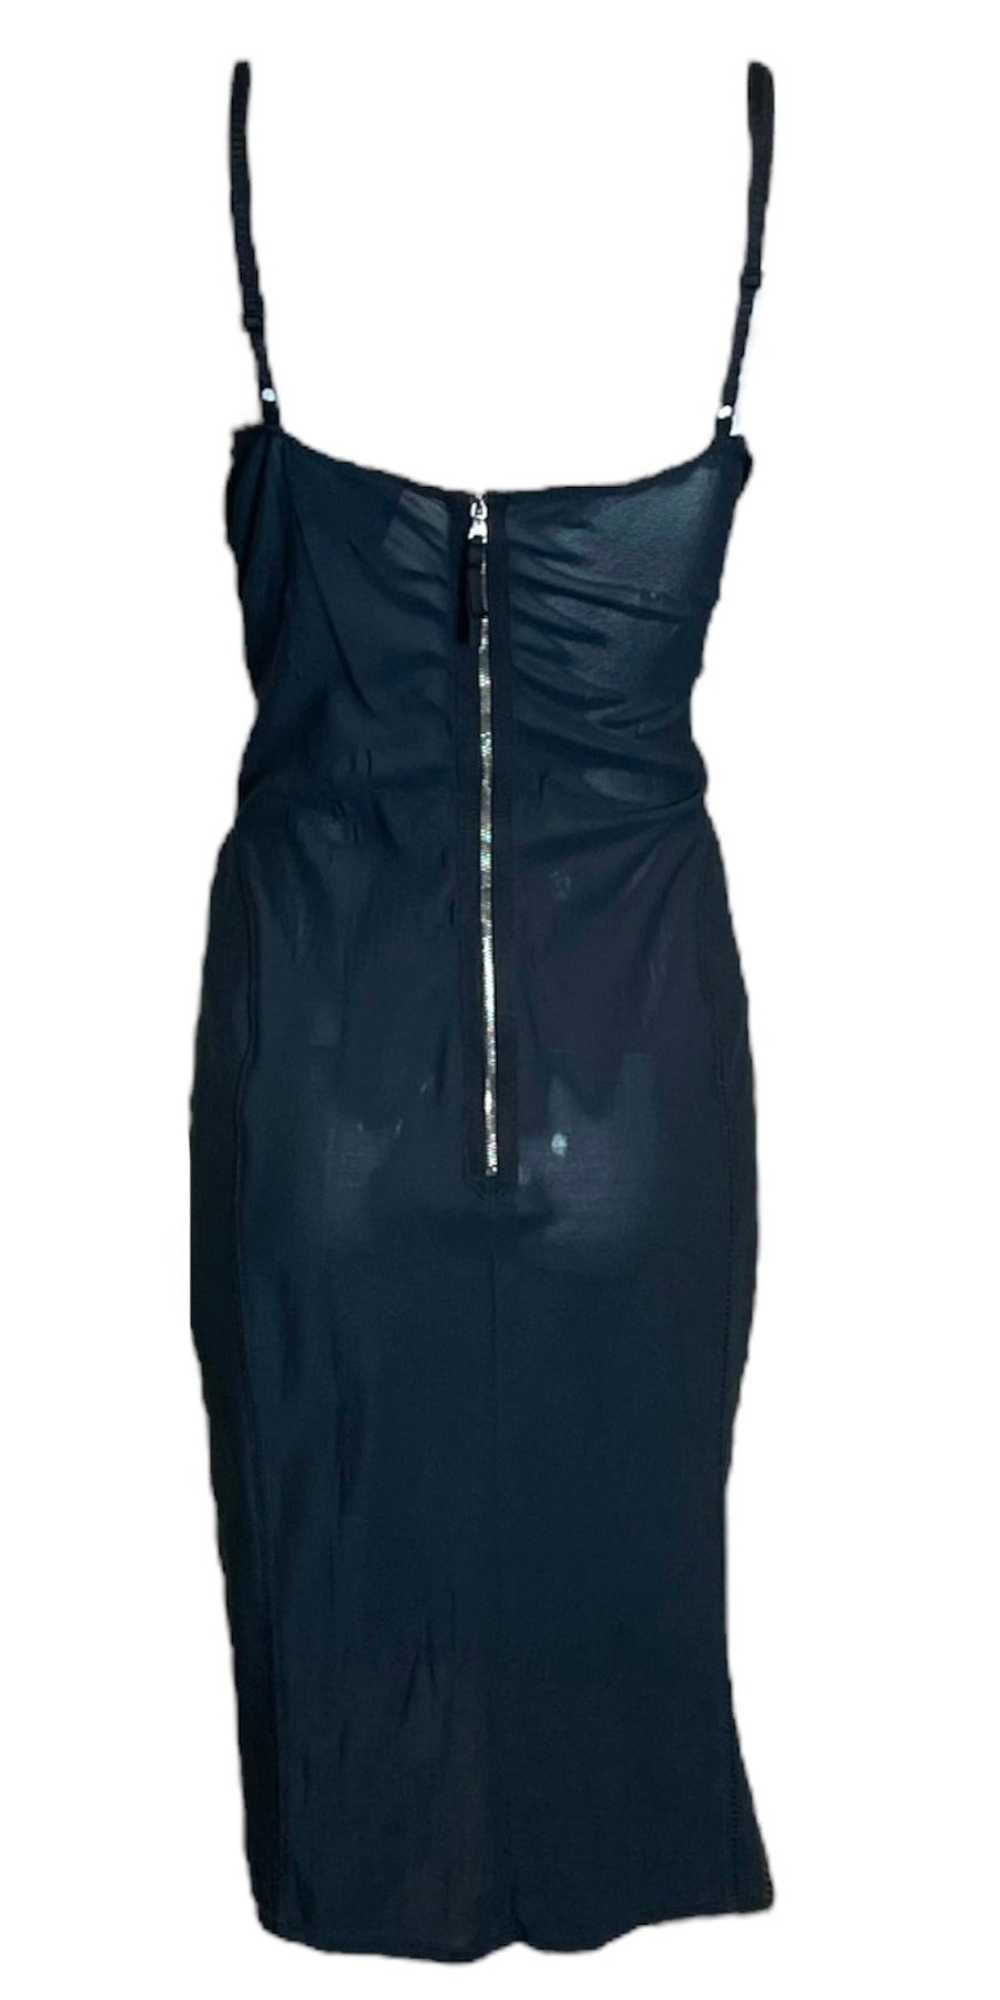 Dolce & Gabbana Y2K Black Mesh Lingerie Dress wit… - image 3